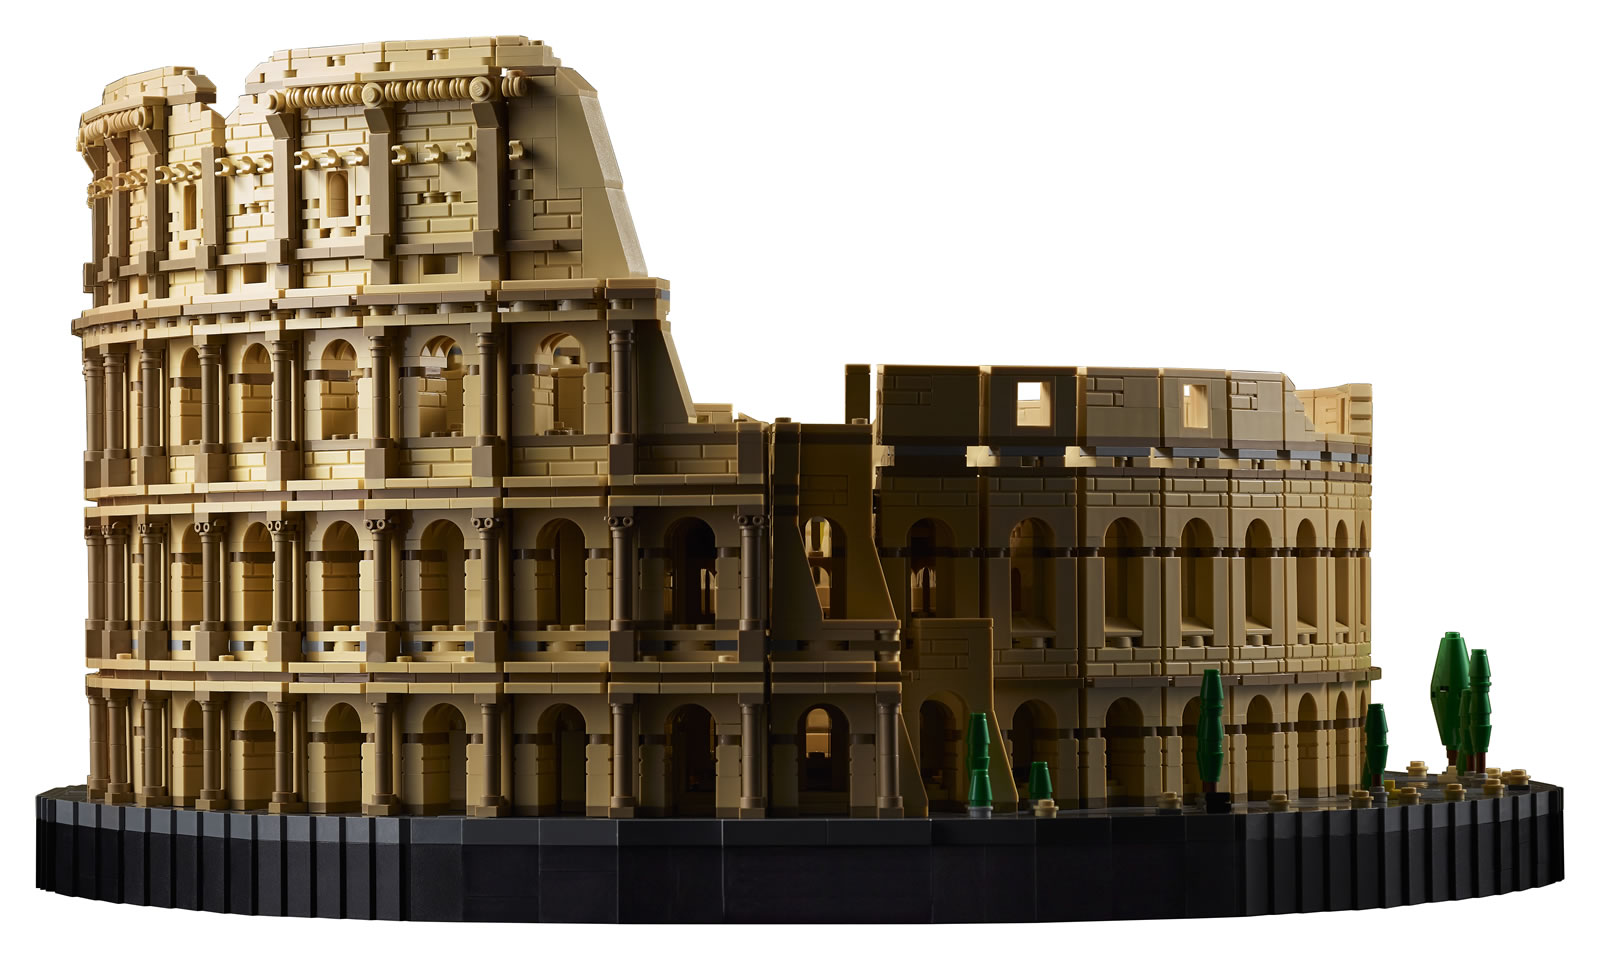 LEGO 10276 Colosseum : le plus gros set Lego arrive ! – Ce que pensent les  hommes